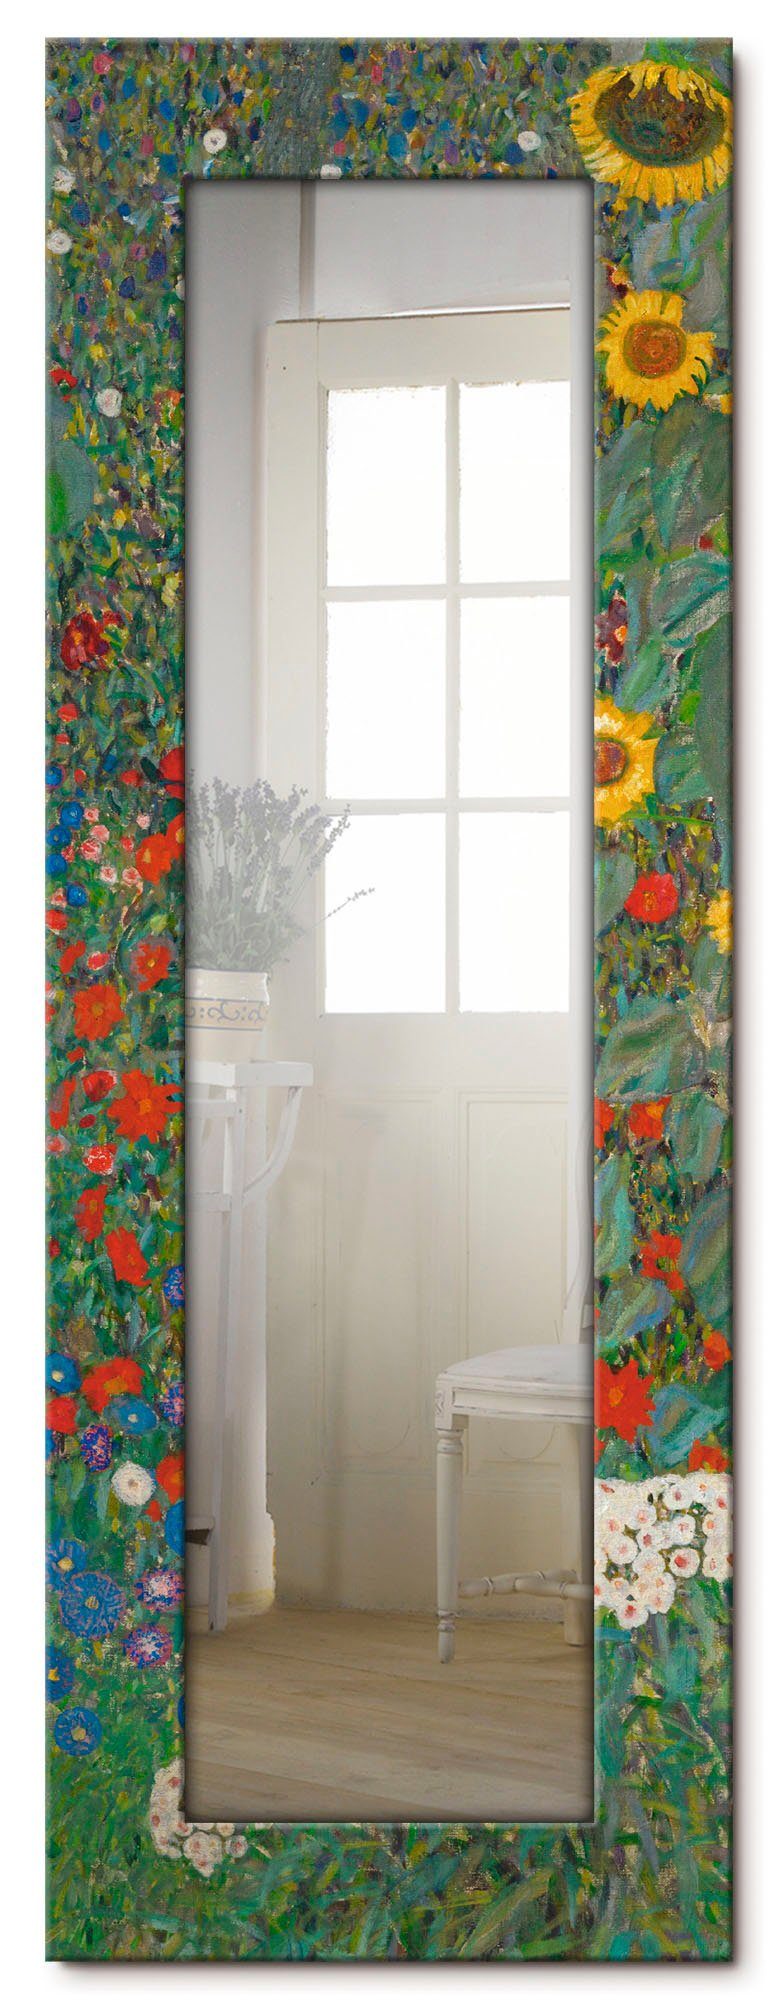 Artland Sierspiegel Tuin met zonnebloemen ingelijste spiegel voor het hele lichaam met motiefrand, geschikt voor kleine, smalle hal, halspiegel, mirror spiegel omrand om op te hang